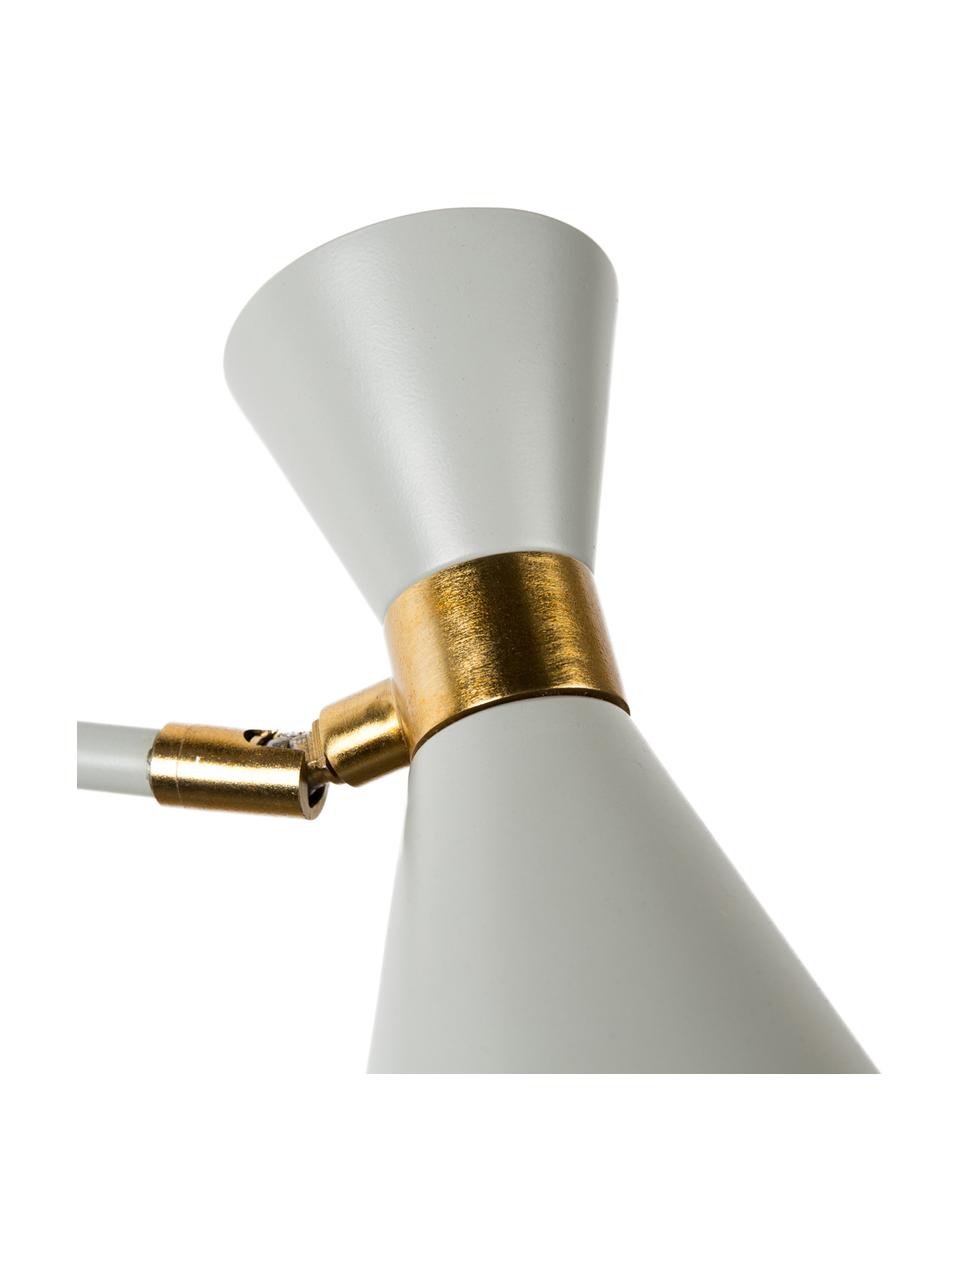 Grote verstelbare wandlamp Double Shady met stekker, Decoratie: vermessingd metaal, Grijs, messingkleurig, D 87 x H 60 cm